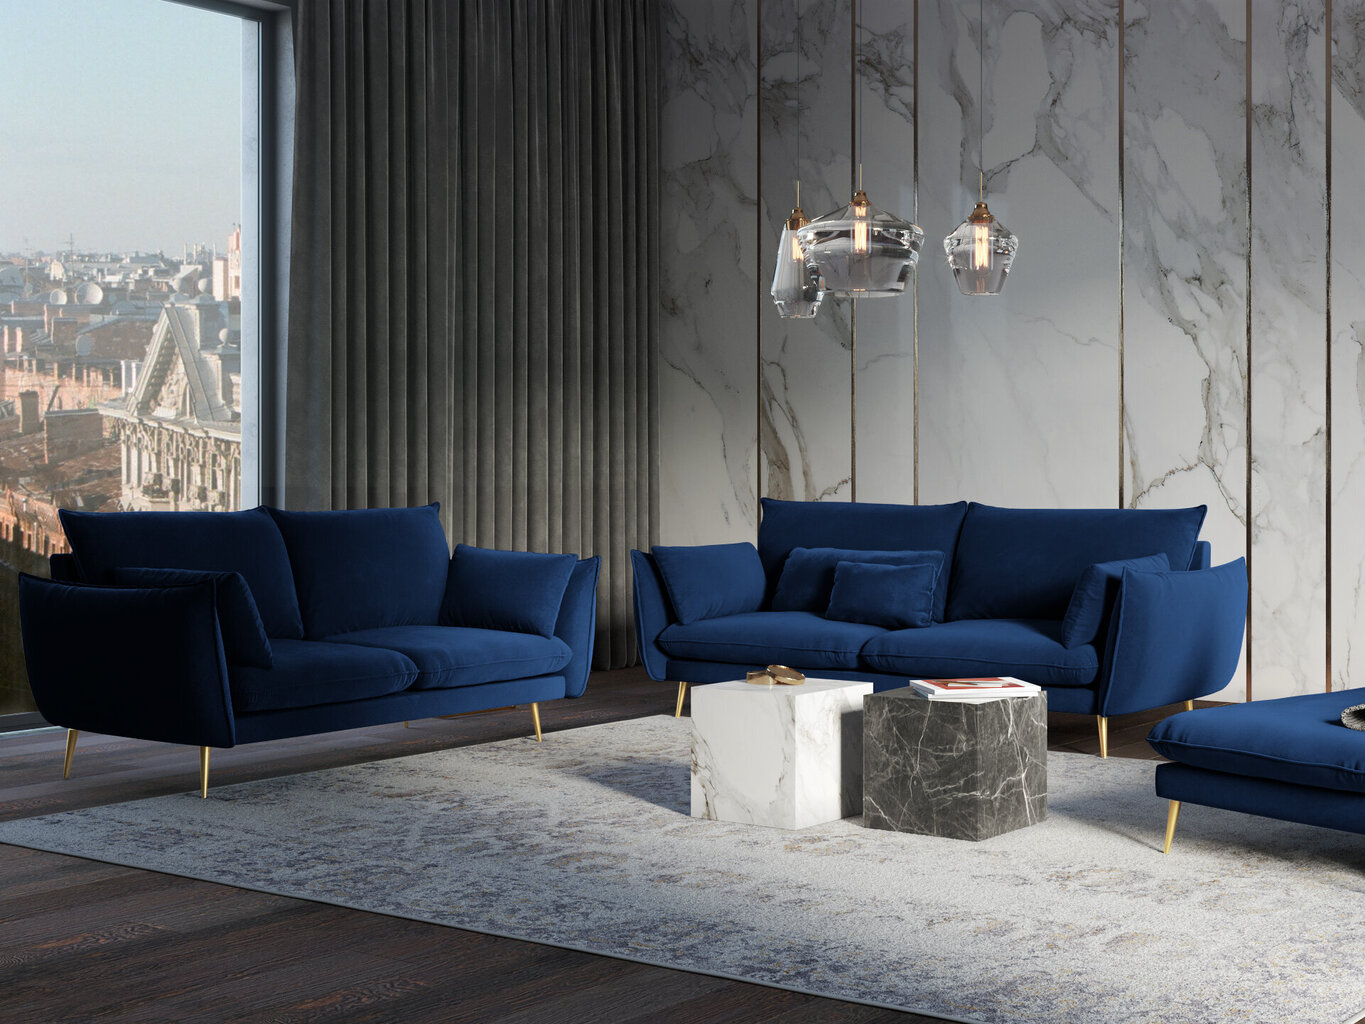 Dvivietė aksominė sofa Milo Casa Elio, mėlyna/auksinės spalvos kaina ir informacija | Sofos | pigu.lt